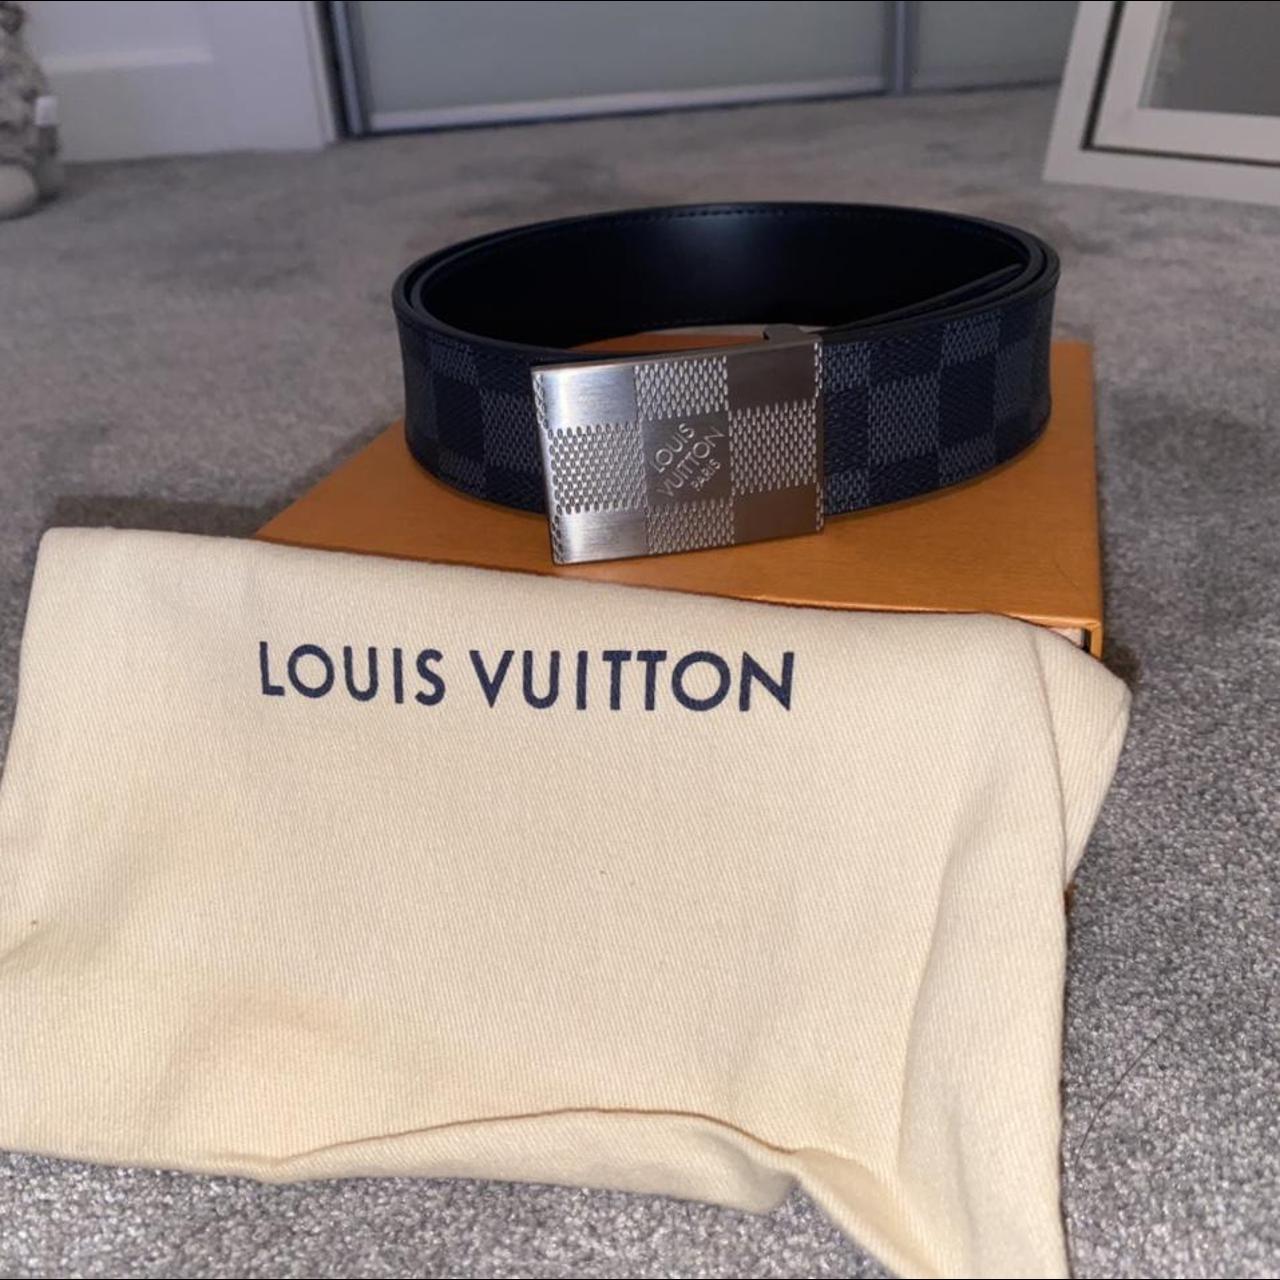 Men’s Louis Vuitton black/grey belt 90cm Excellent... - Depop